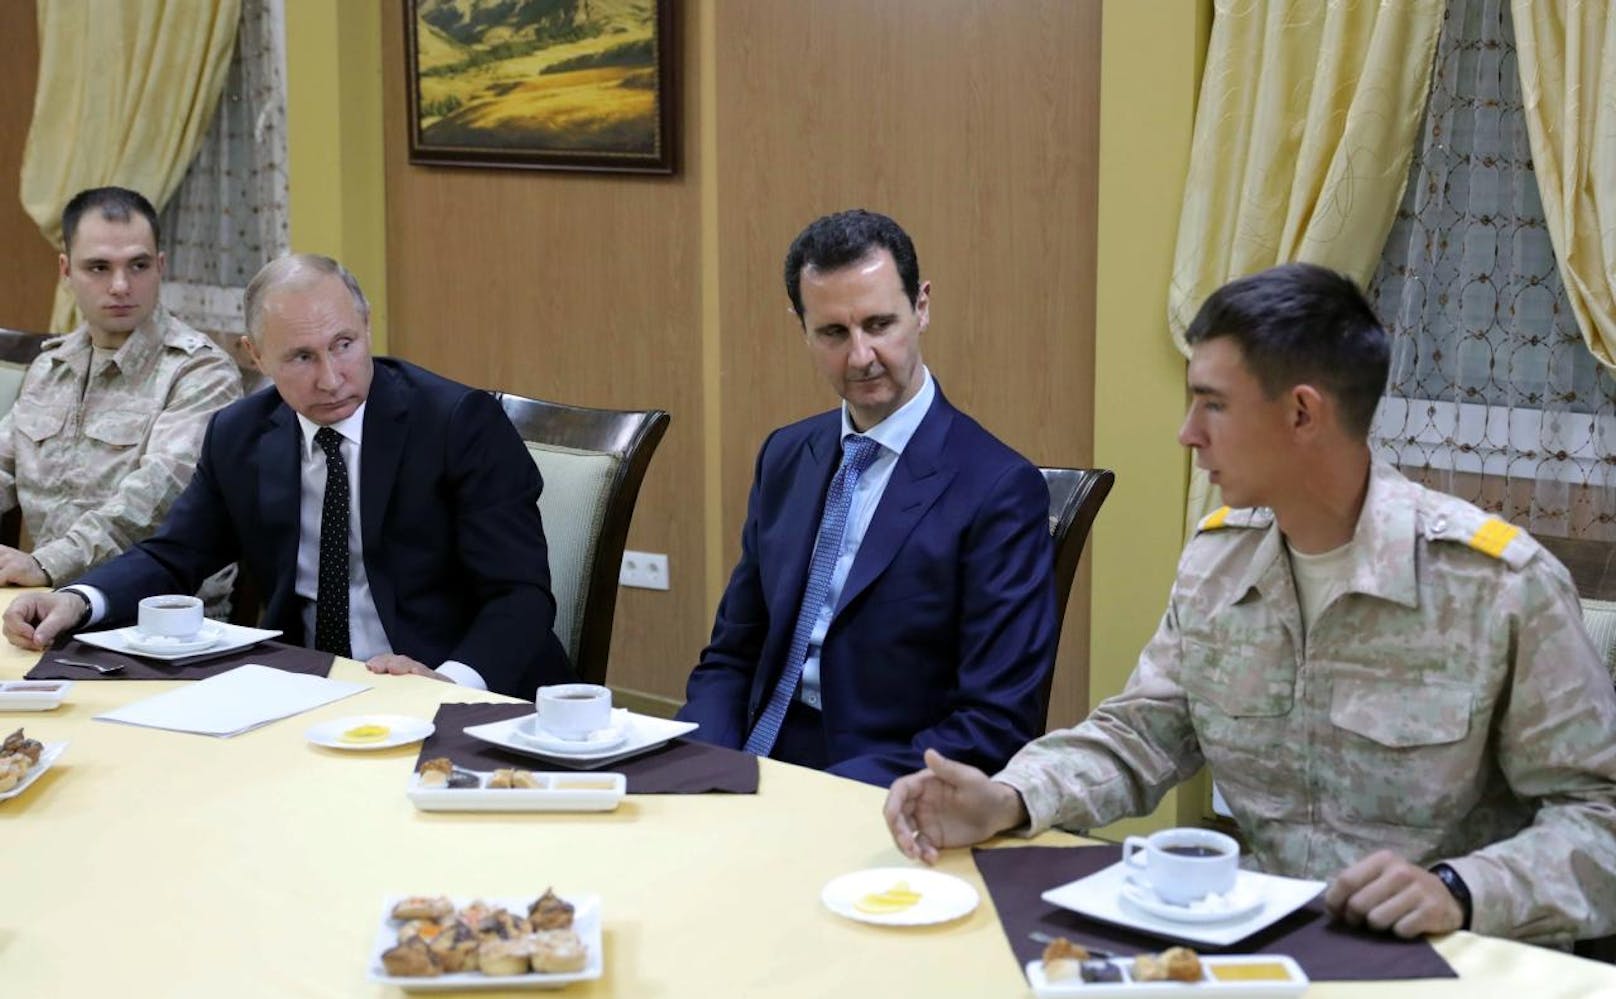 <b>Das Assad-Regime:</b> Der syrische Machthaber Bashar al-Assad schaut der türkischen Militäroperation mit zusammengebissenen Zähnen zu. Denn das mit ihm verbündete Russland hat der Türkei für die Operation in einem begrenzten Umfang grünes Licht gegeben. Dabei sind ...